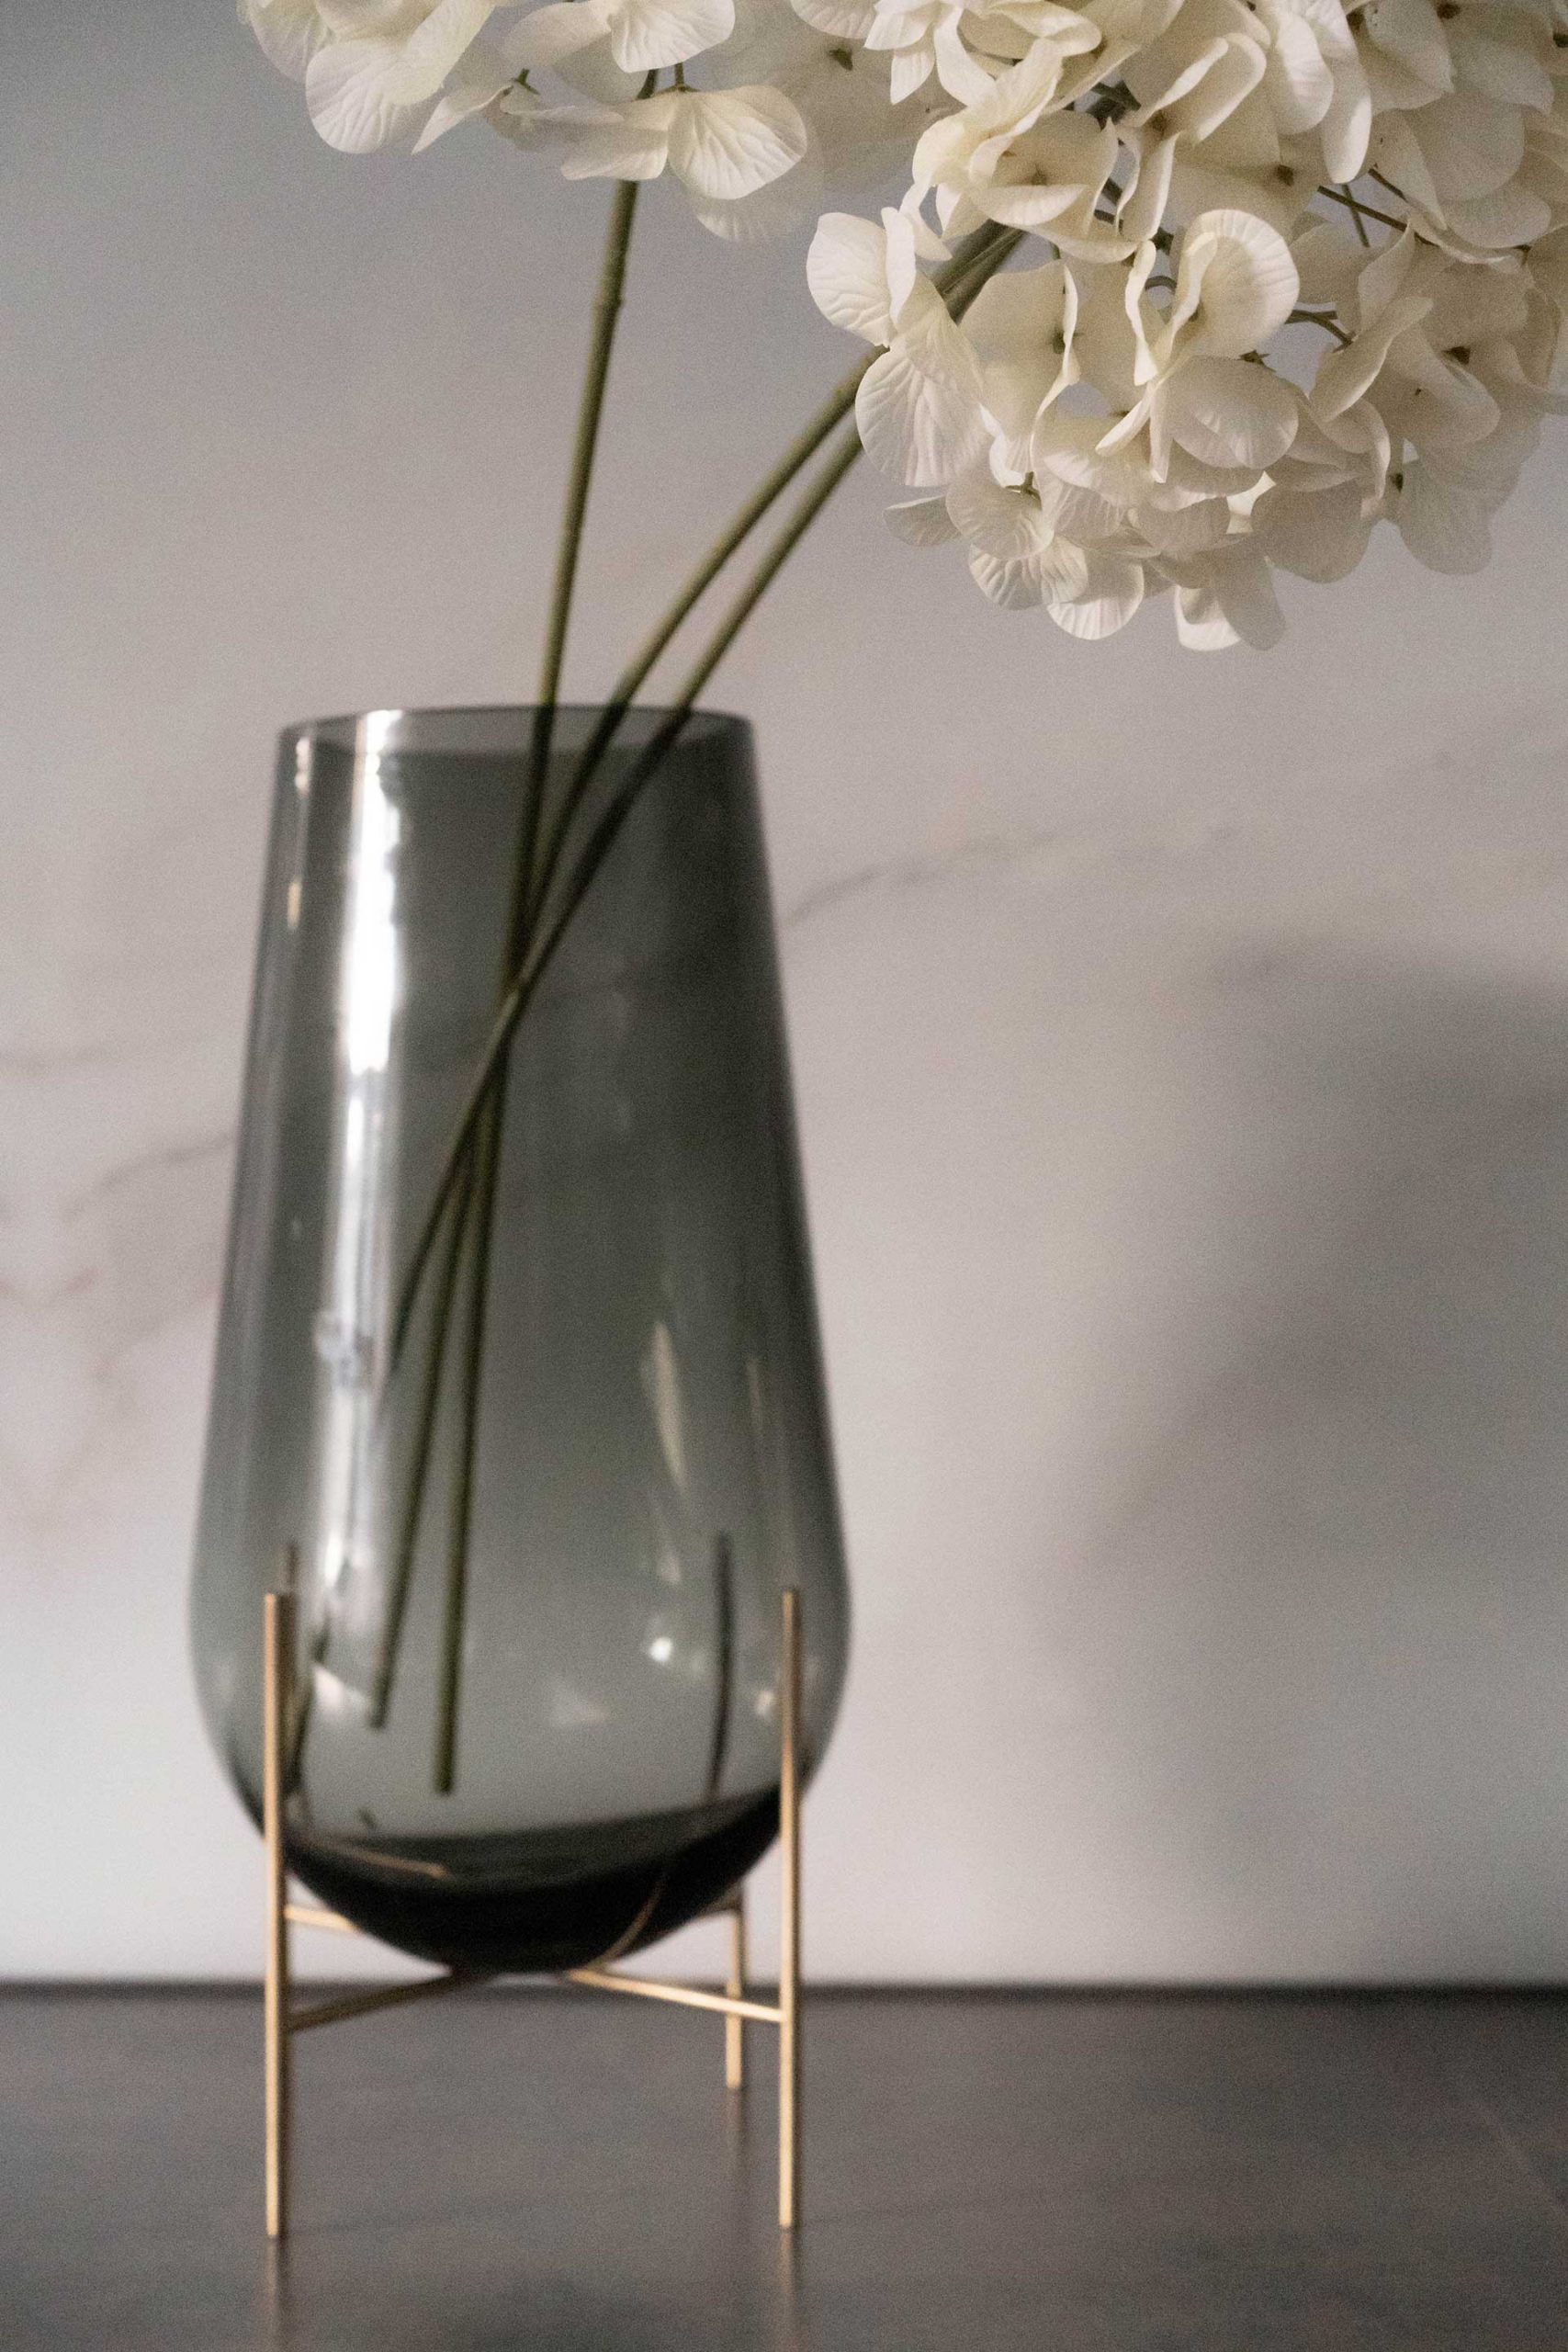 Meine Vasen Dekorationstipps gibt es jetzt am Interiorblog. Ein Leitfaden mit Tipps und Ideen, wie man Vasen zu Hause am besten dekoriert - perfekt, um jedem Raum einen Hauch von Persönlichkeit zu verleihen! www.whoismocca.com